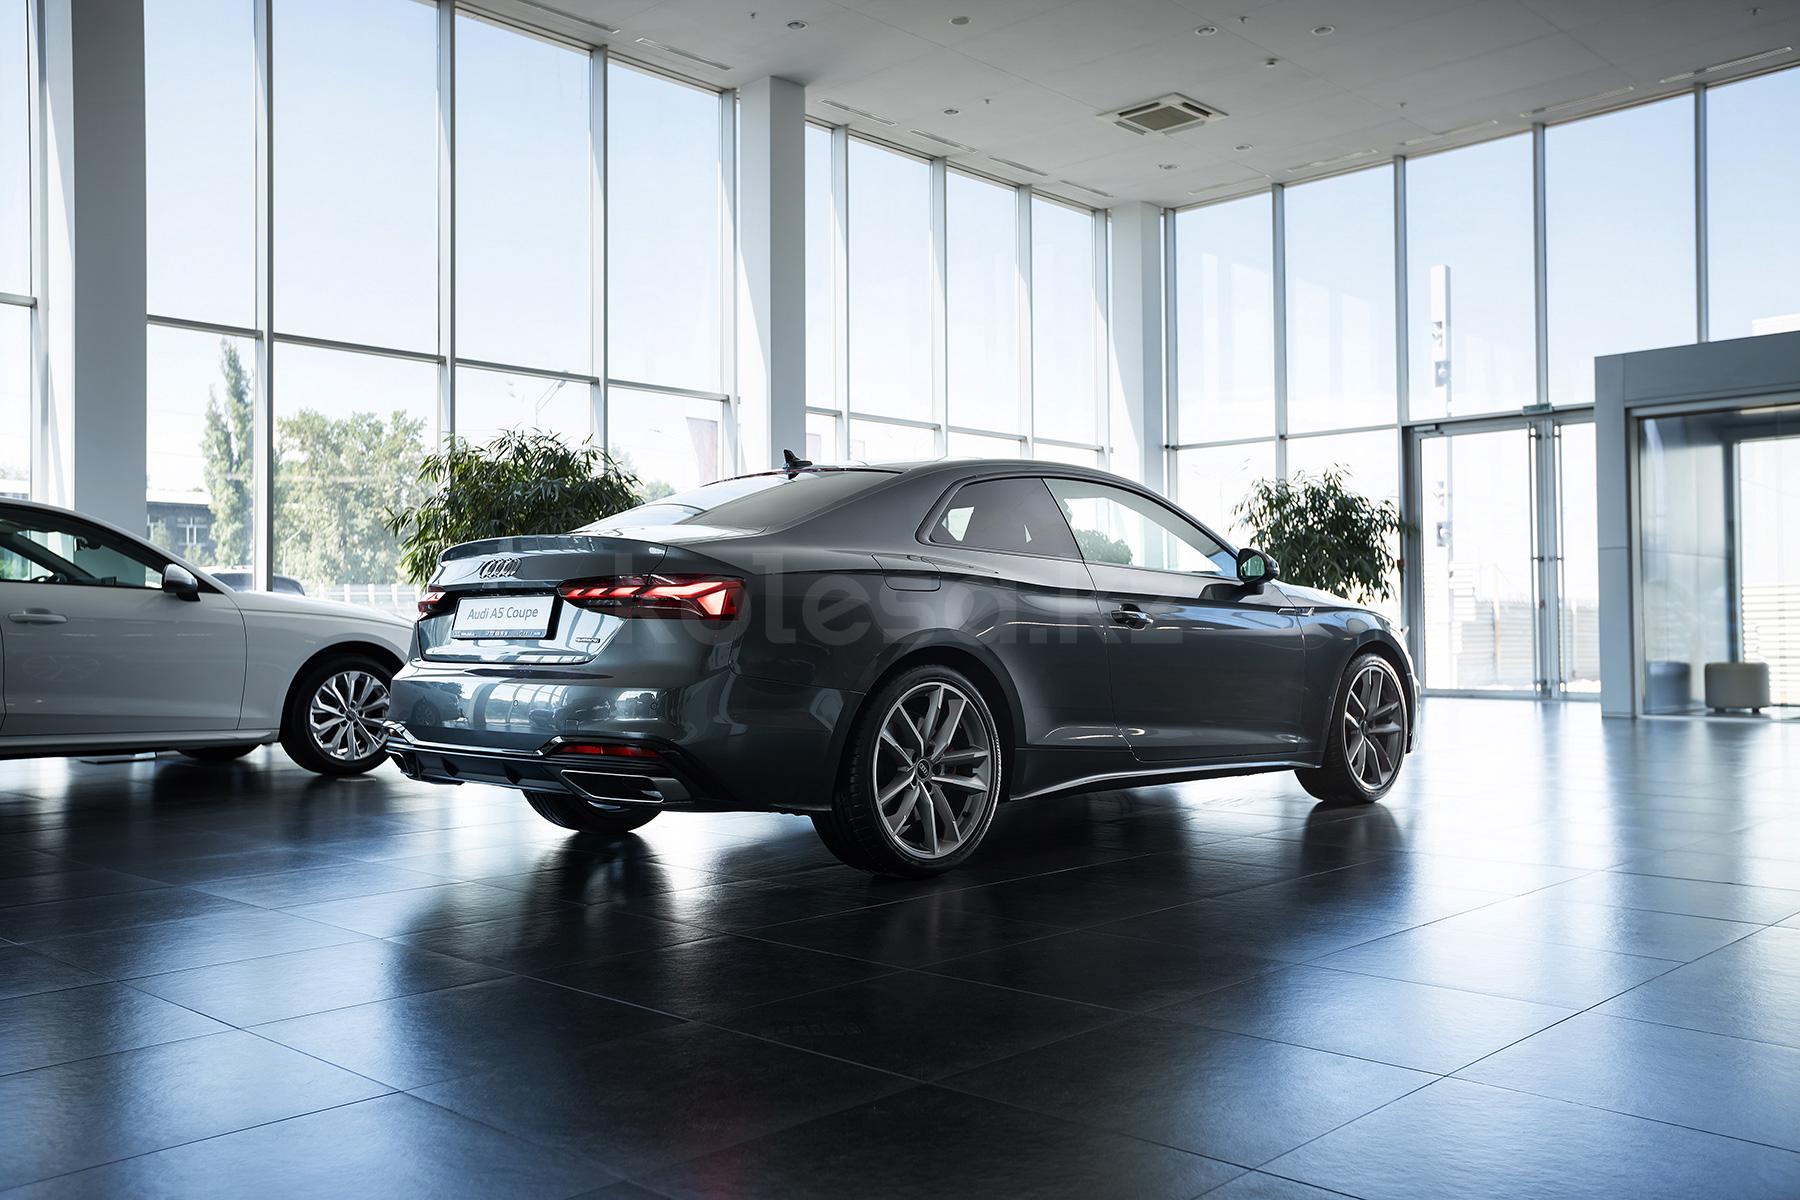 Audi A5 Coupe C 2019 - н.в. года от 30 528 000 тенге